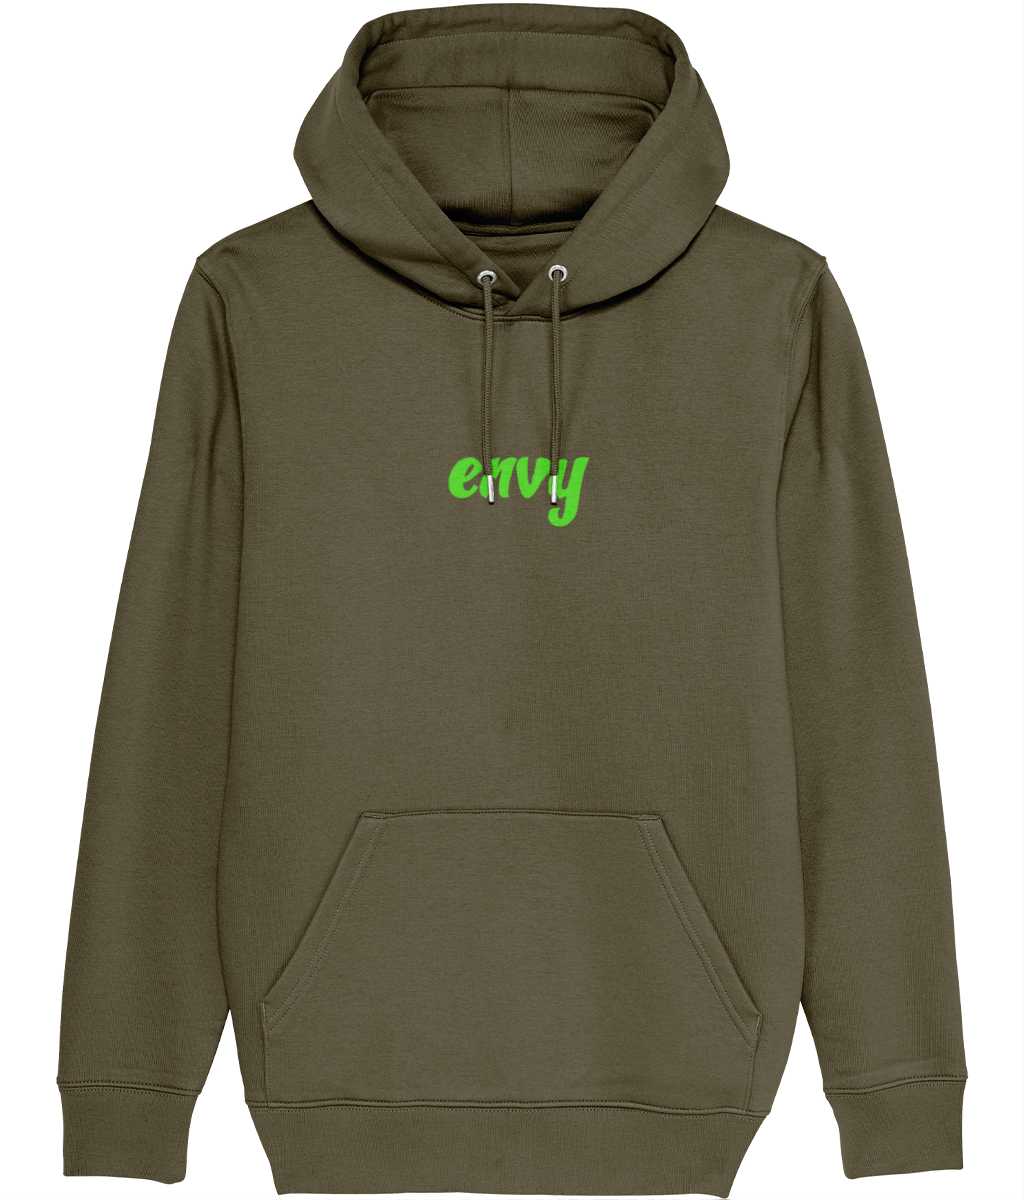 Envy non gender hoodie Cherchez La Femme brand